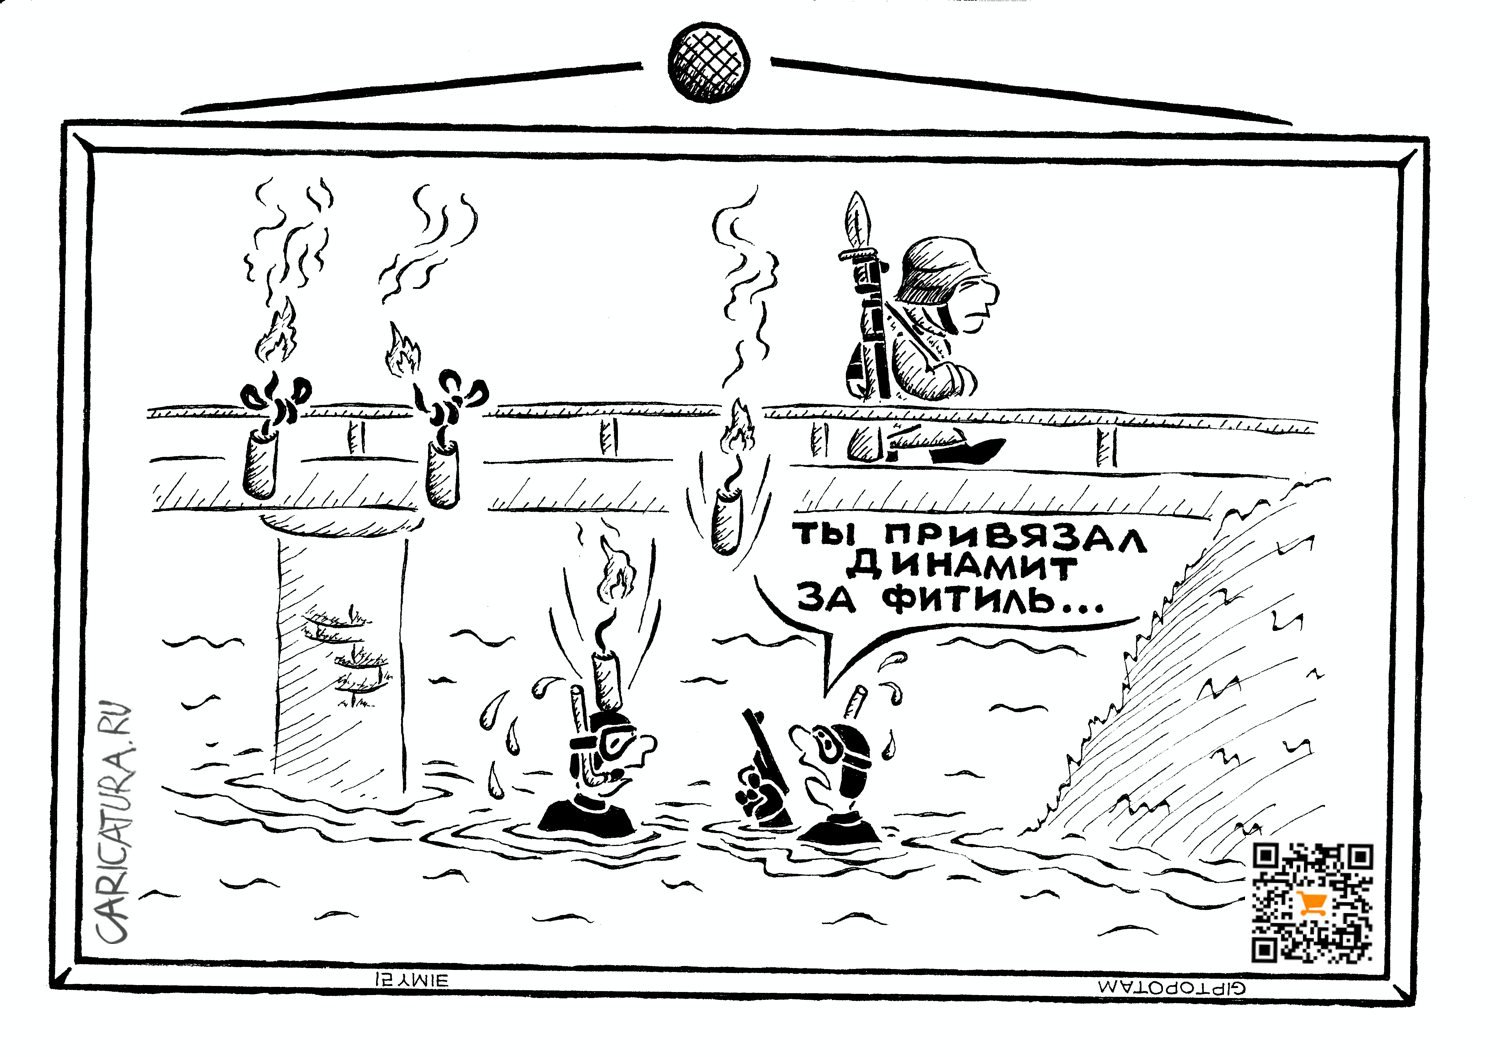 Карикатура "На войне как на во...лне", Александр Евангелистов